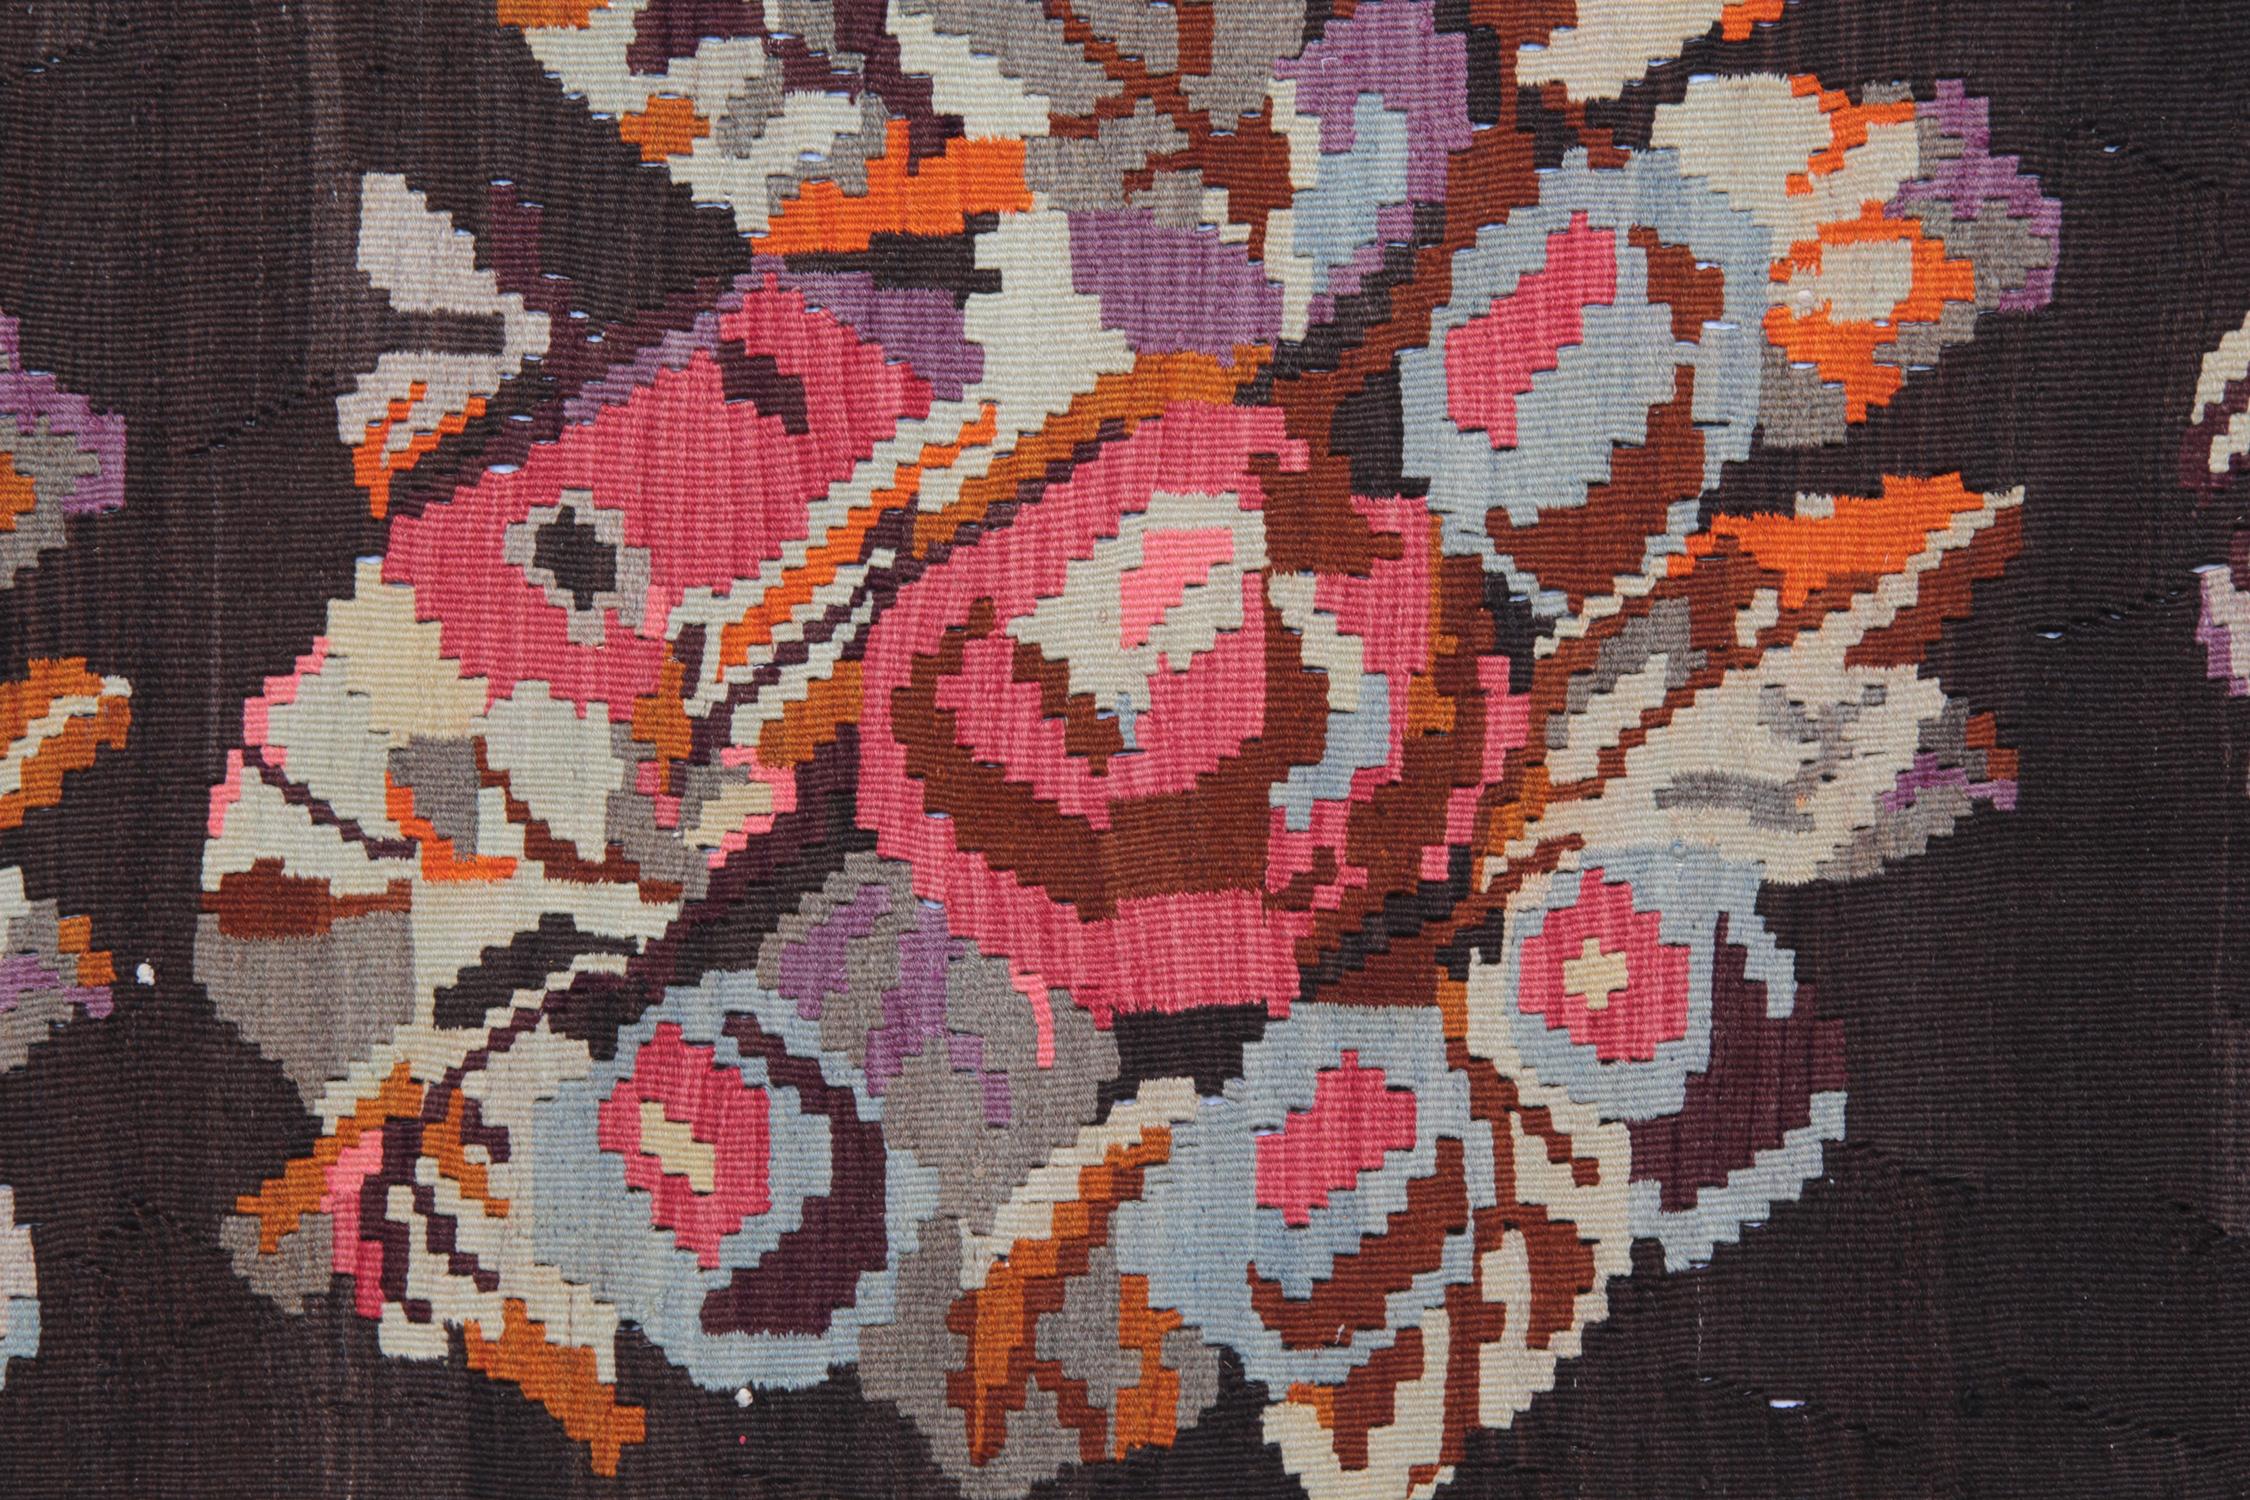 Ce tapis coloré a été tissé et teint à la main selon les techniques traditionnelles de teinture végétale au Karabagh. Utilisant uniquement de la laine et du coton de la plus haute qualité, ce tapis à tissage plat présente des couleurs bleu, orange,